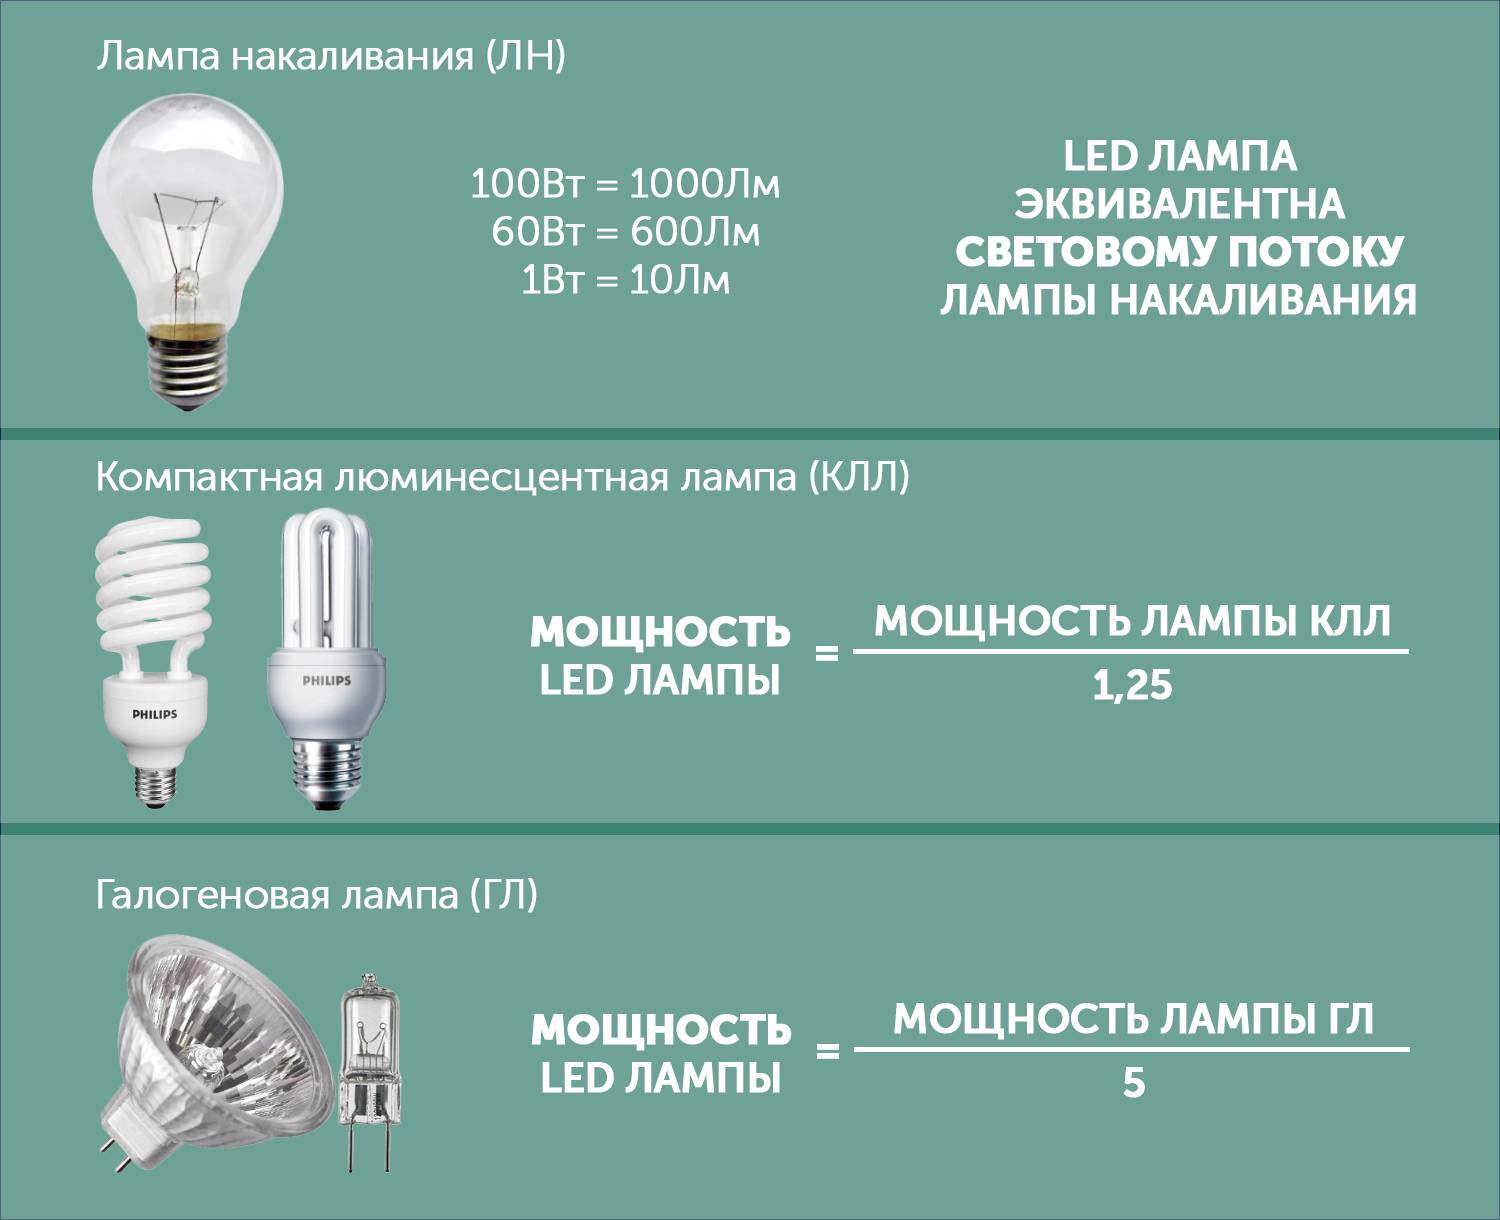 Как выбрать светодиодную лампу: какие led лампы лучше